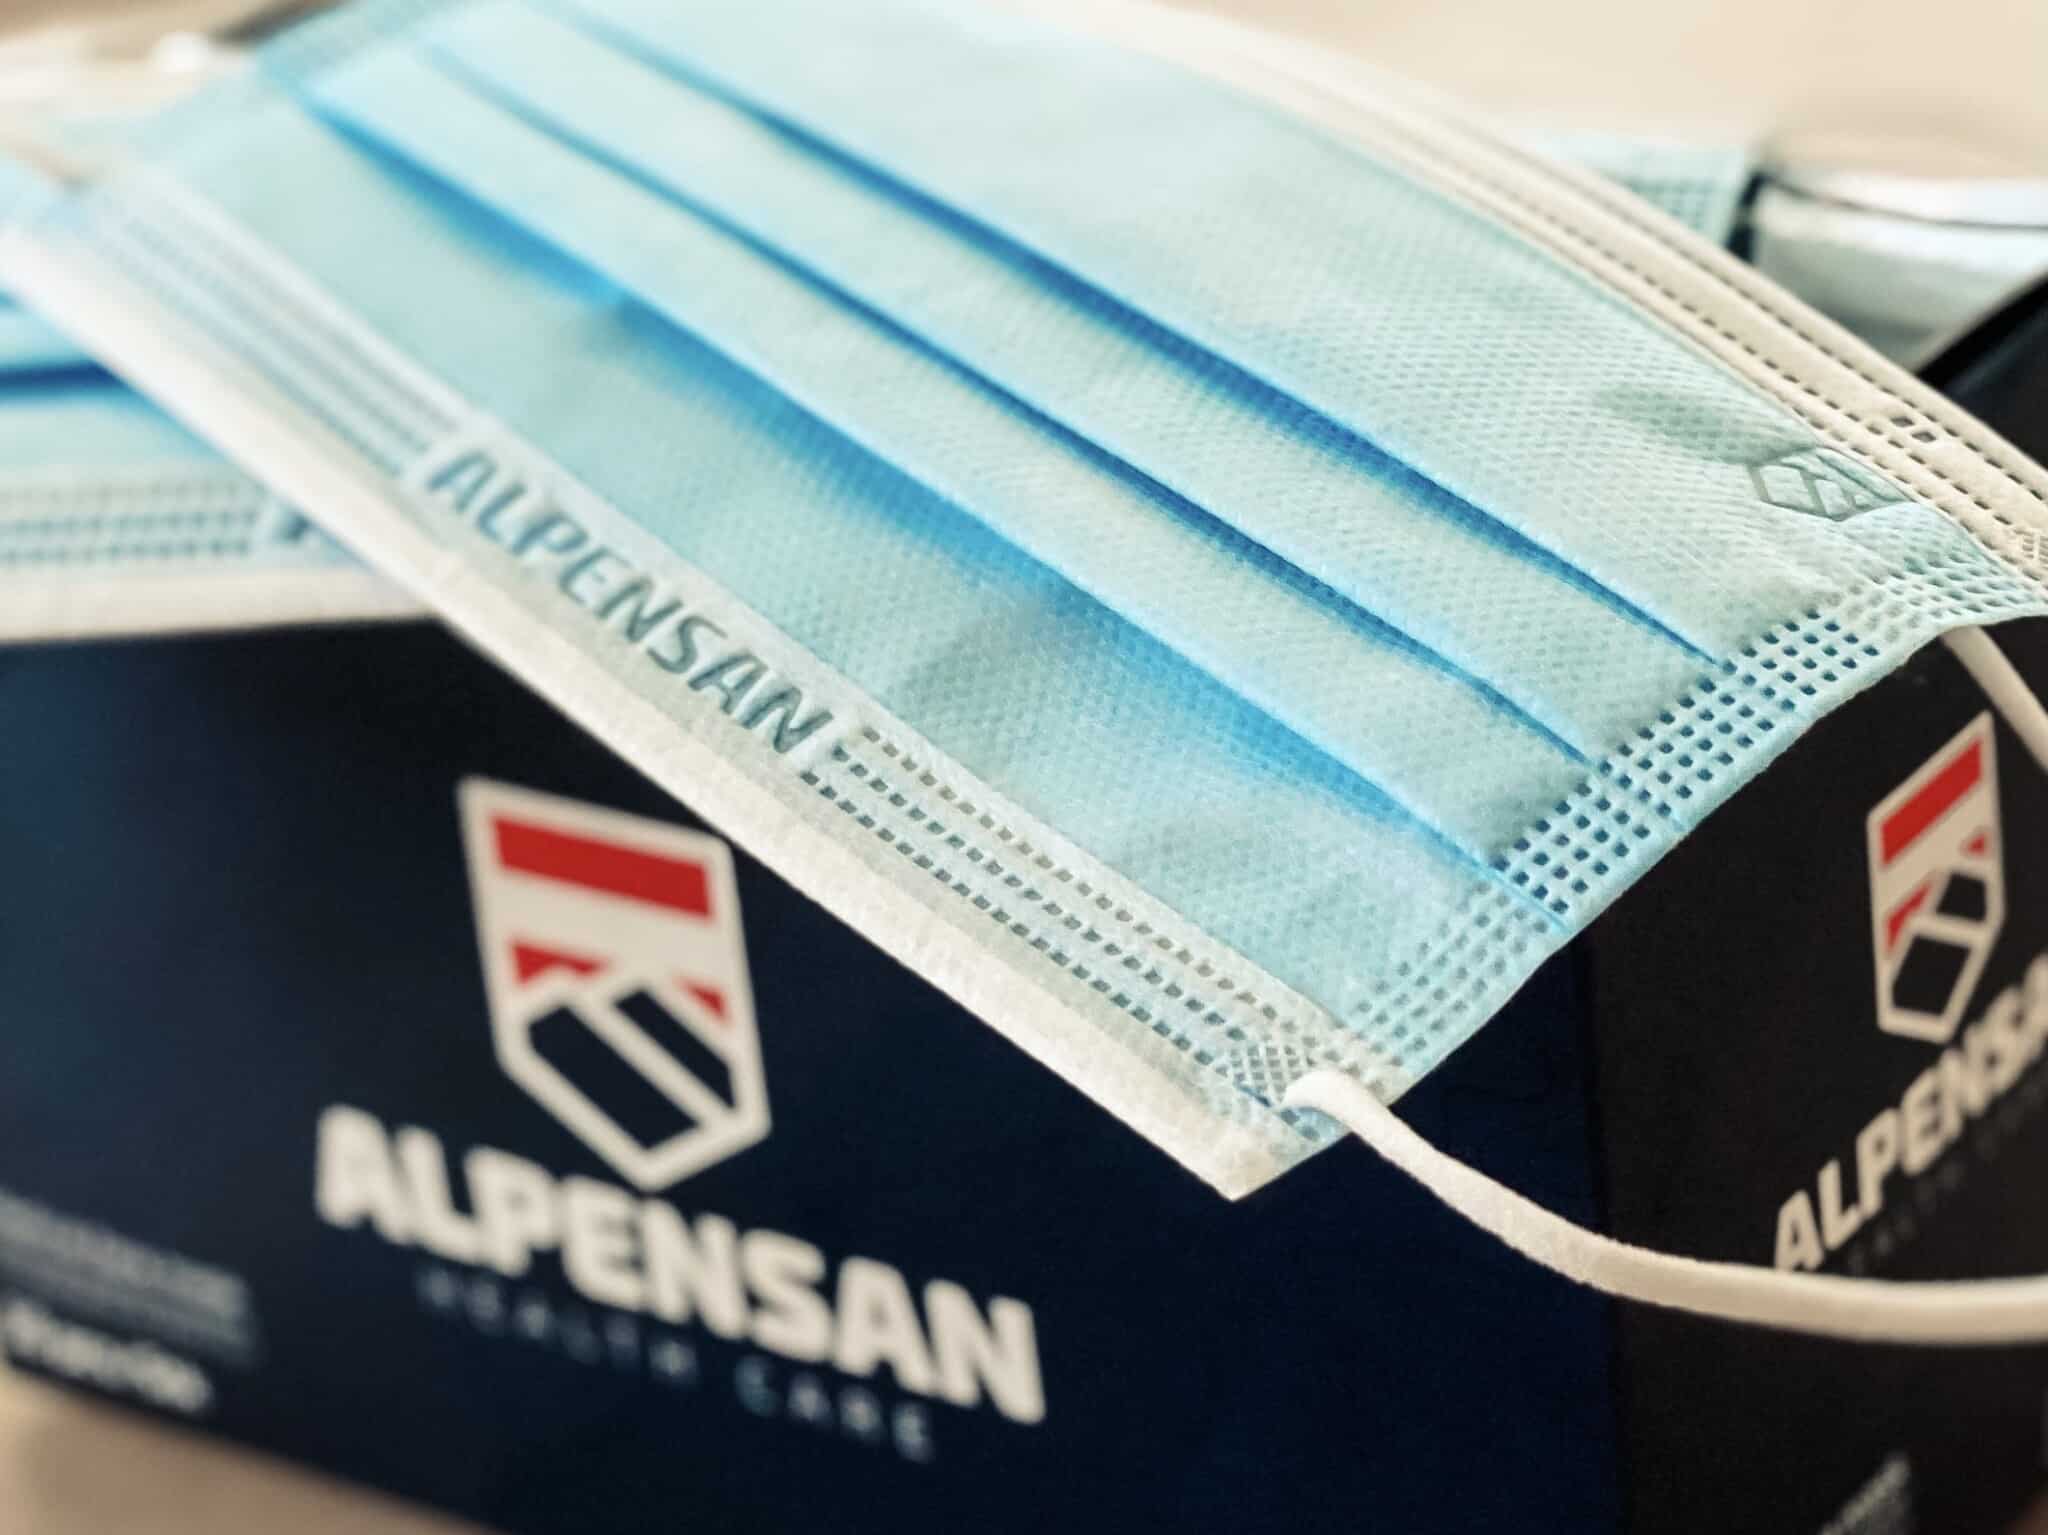 Die medizinischen Gesichtsmasken von AlpenSan werden in Klagenfurt produziert.